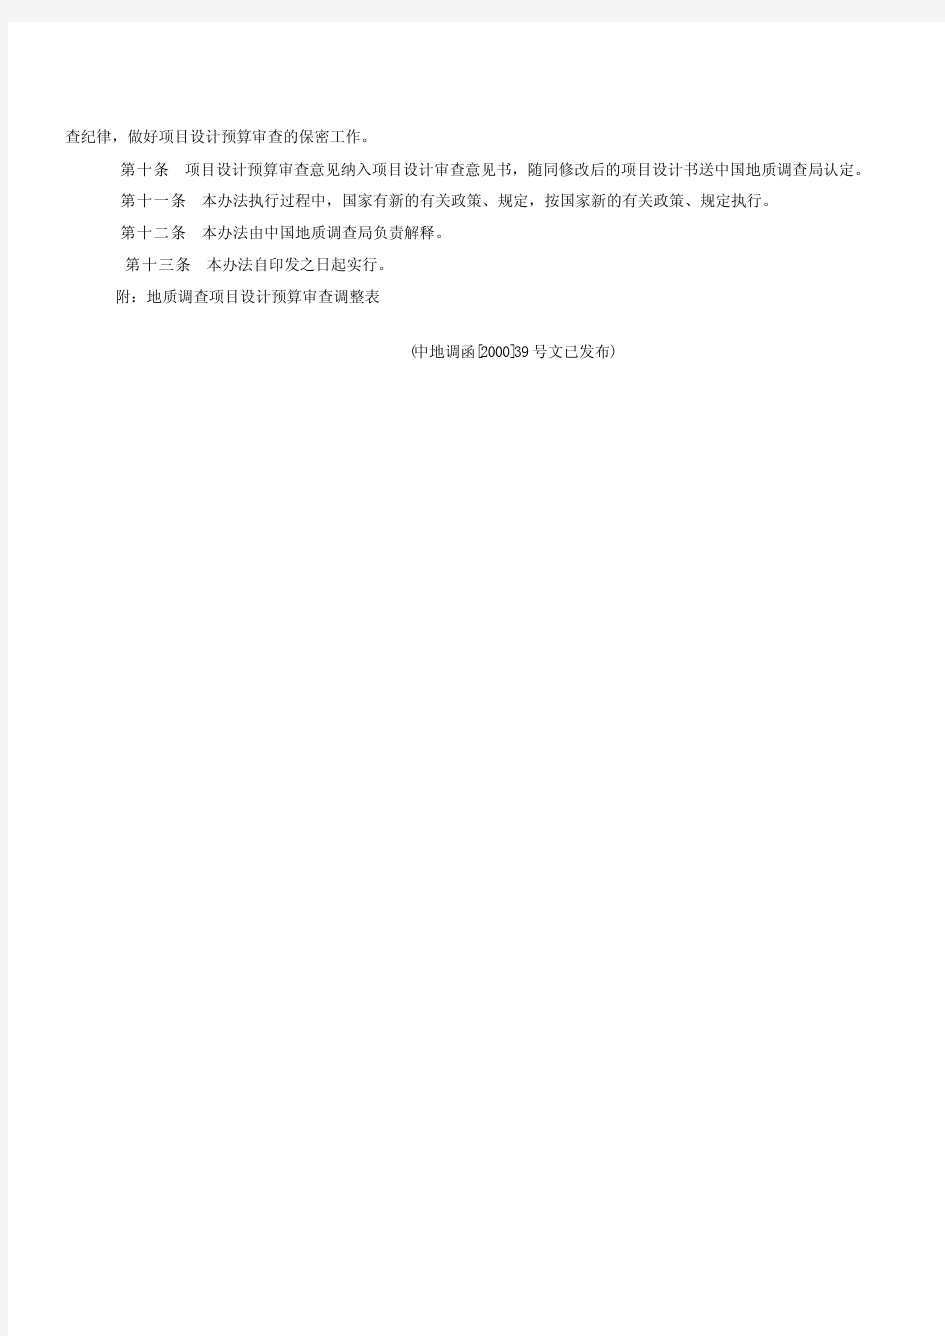 中国地质调查局地质调查项目设计预算审查暂行办法